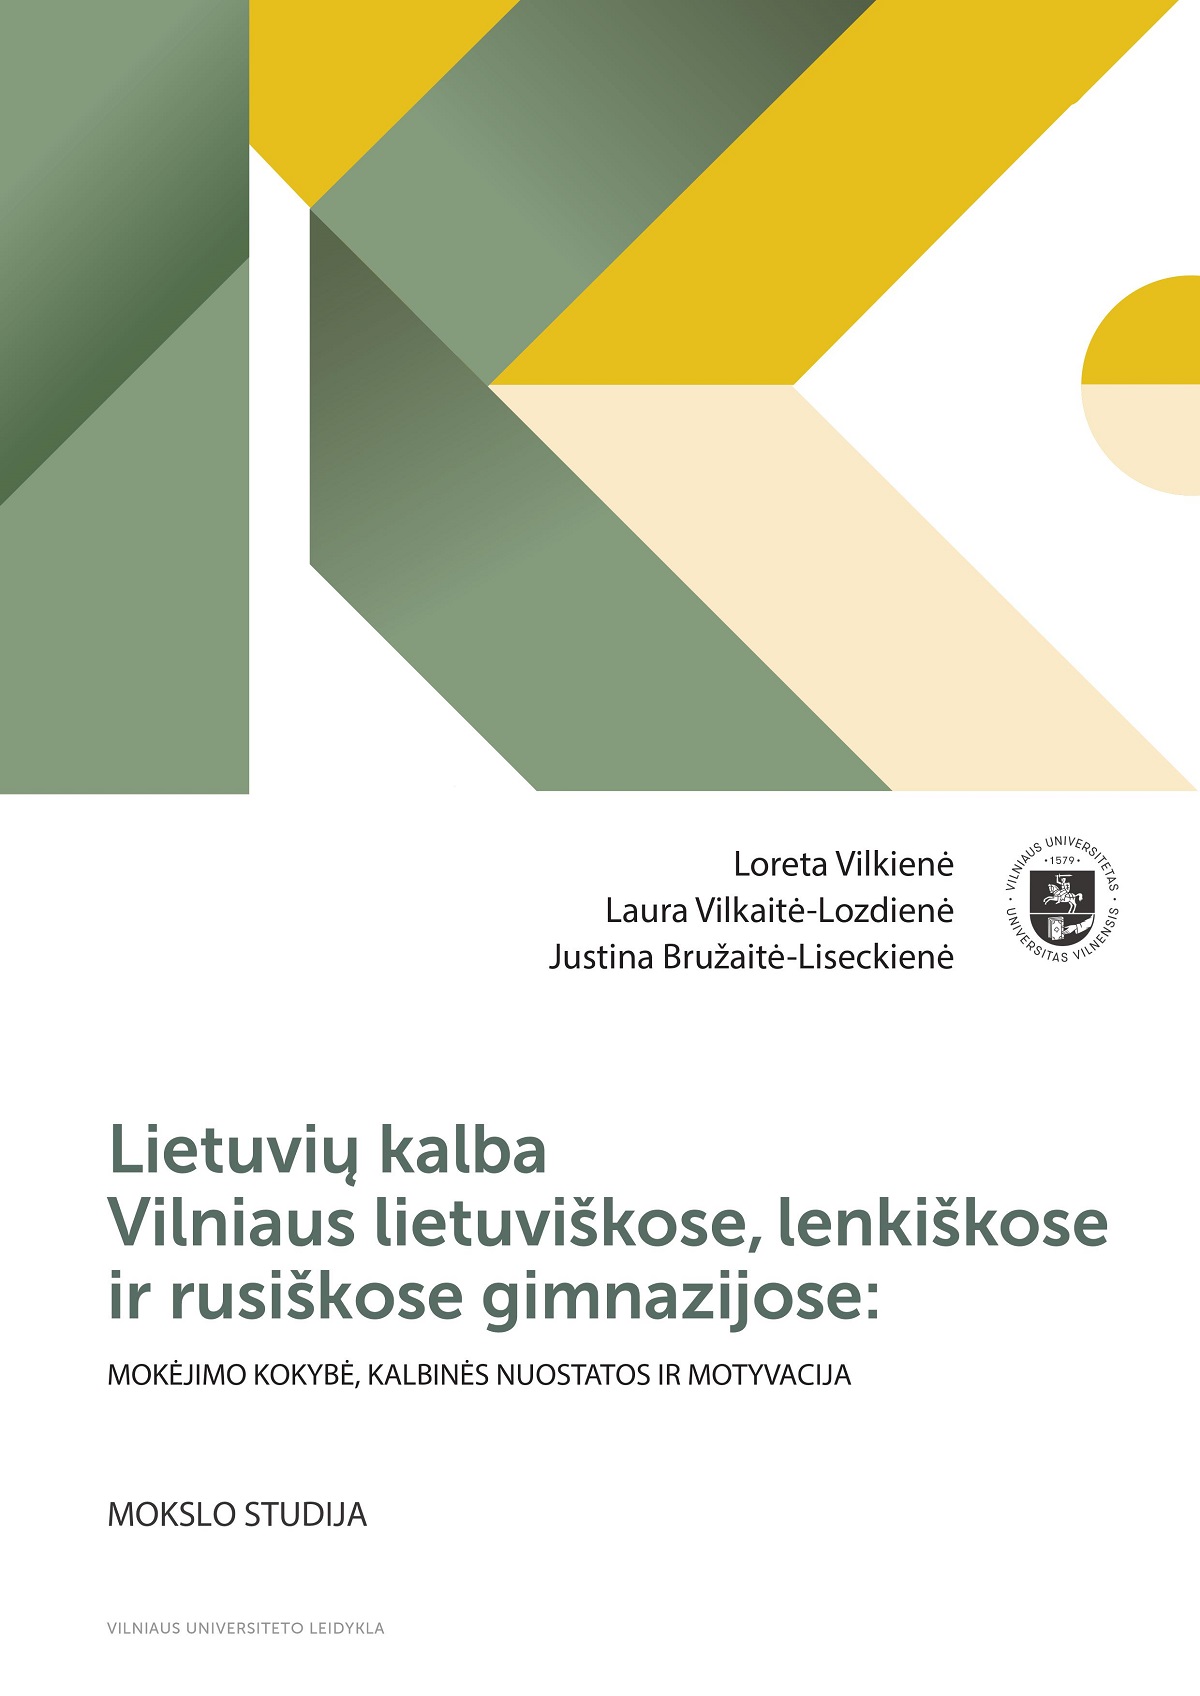 Lietuvių kalba Vilniaus lietuviškose, lenkiškose ir rusiškose gimnazijose: mokėjimo kokybė, kalbinės nuostatos ir motyvacija